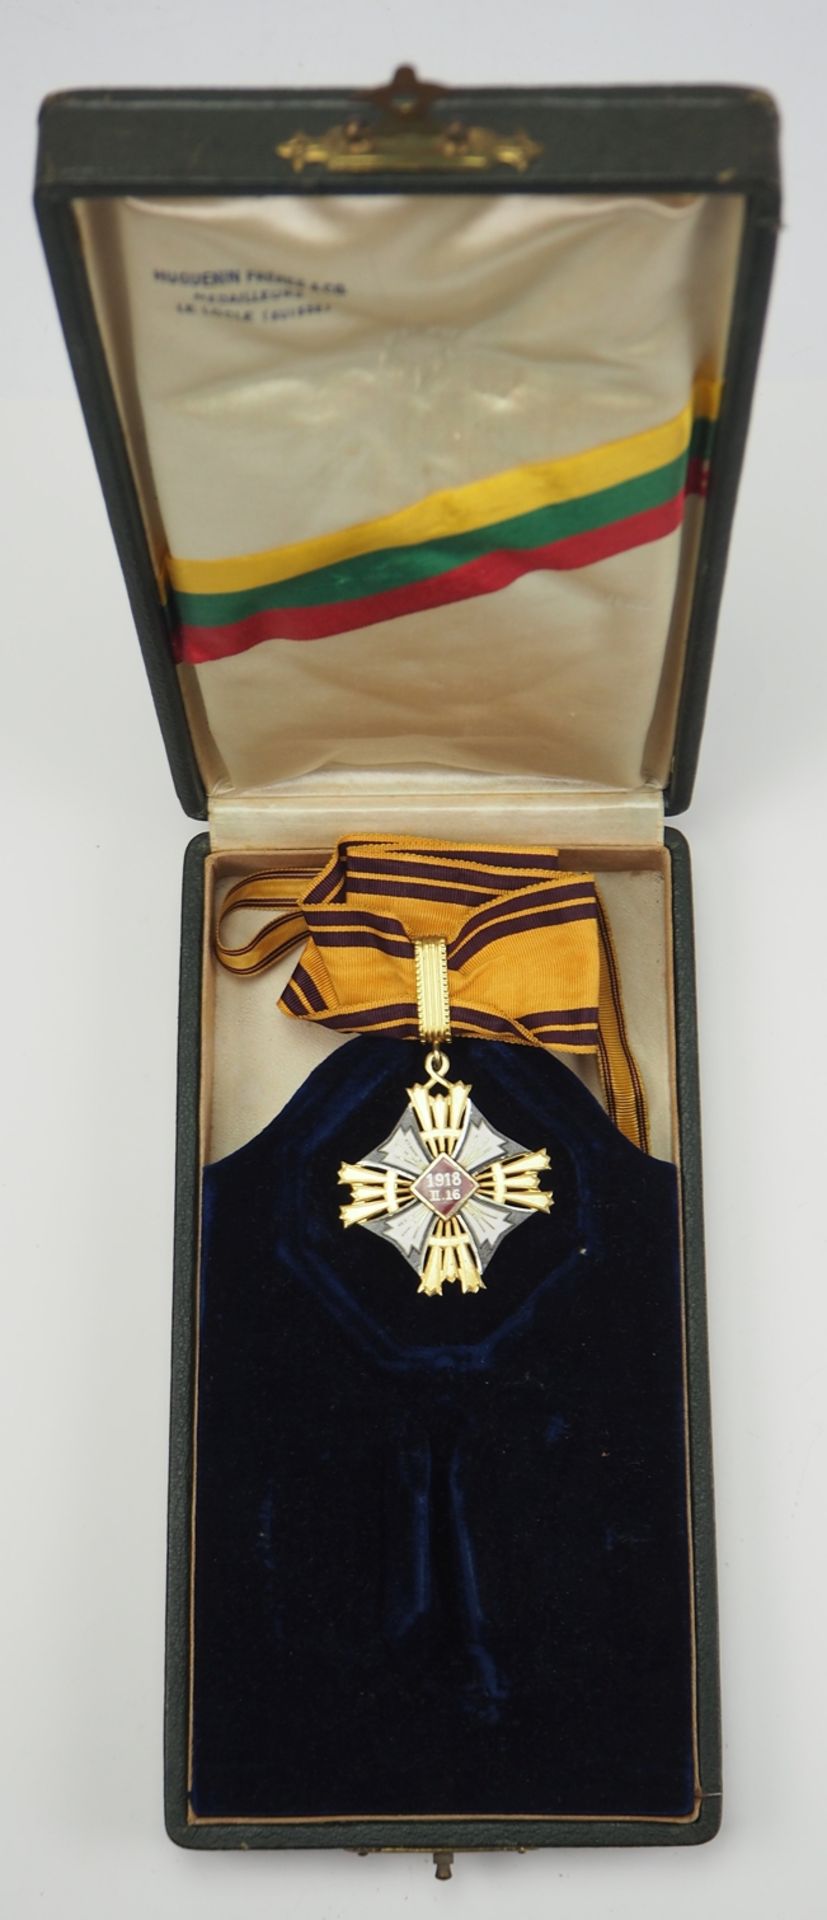 Litauen: Orden des Großfürsten Gediminas, 2. Modell (1930-1940), Großkomtur Satz, im Etui. - Image 3 of 4